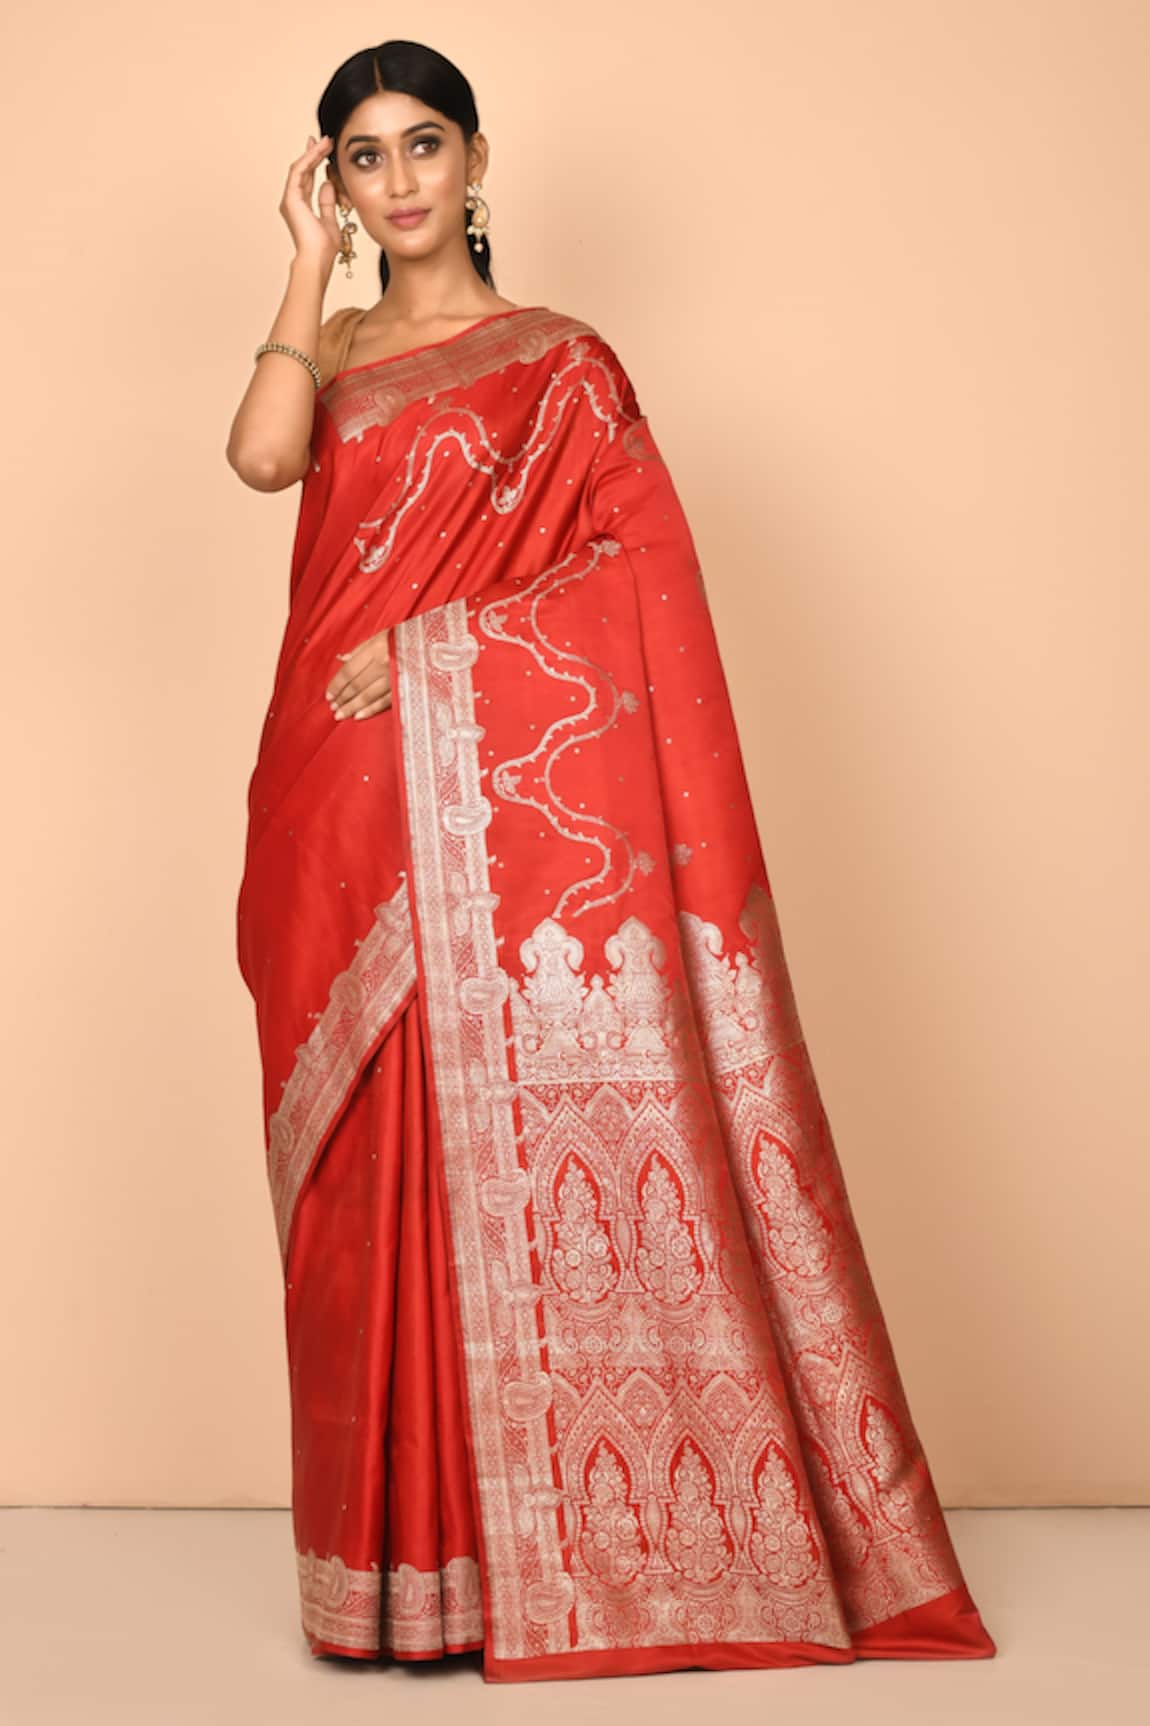 Arihant Rai Sinha Banarasi Silk Handloom Saree